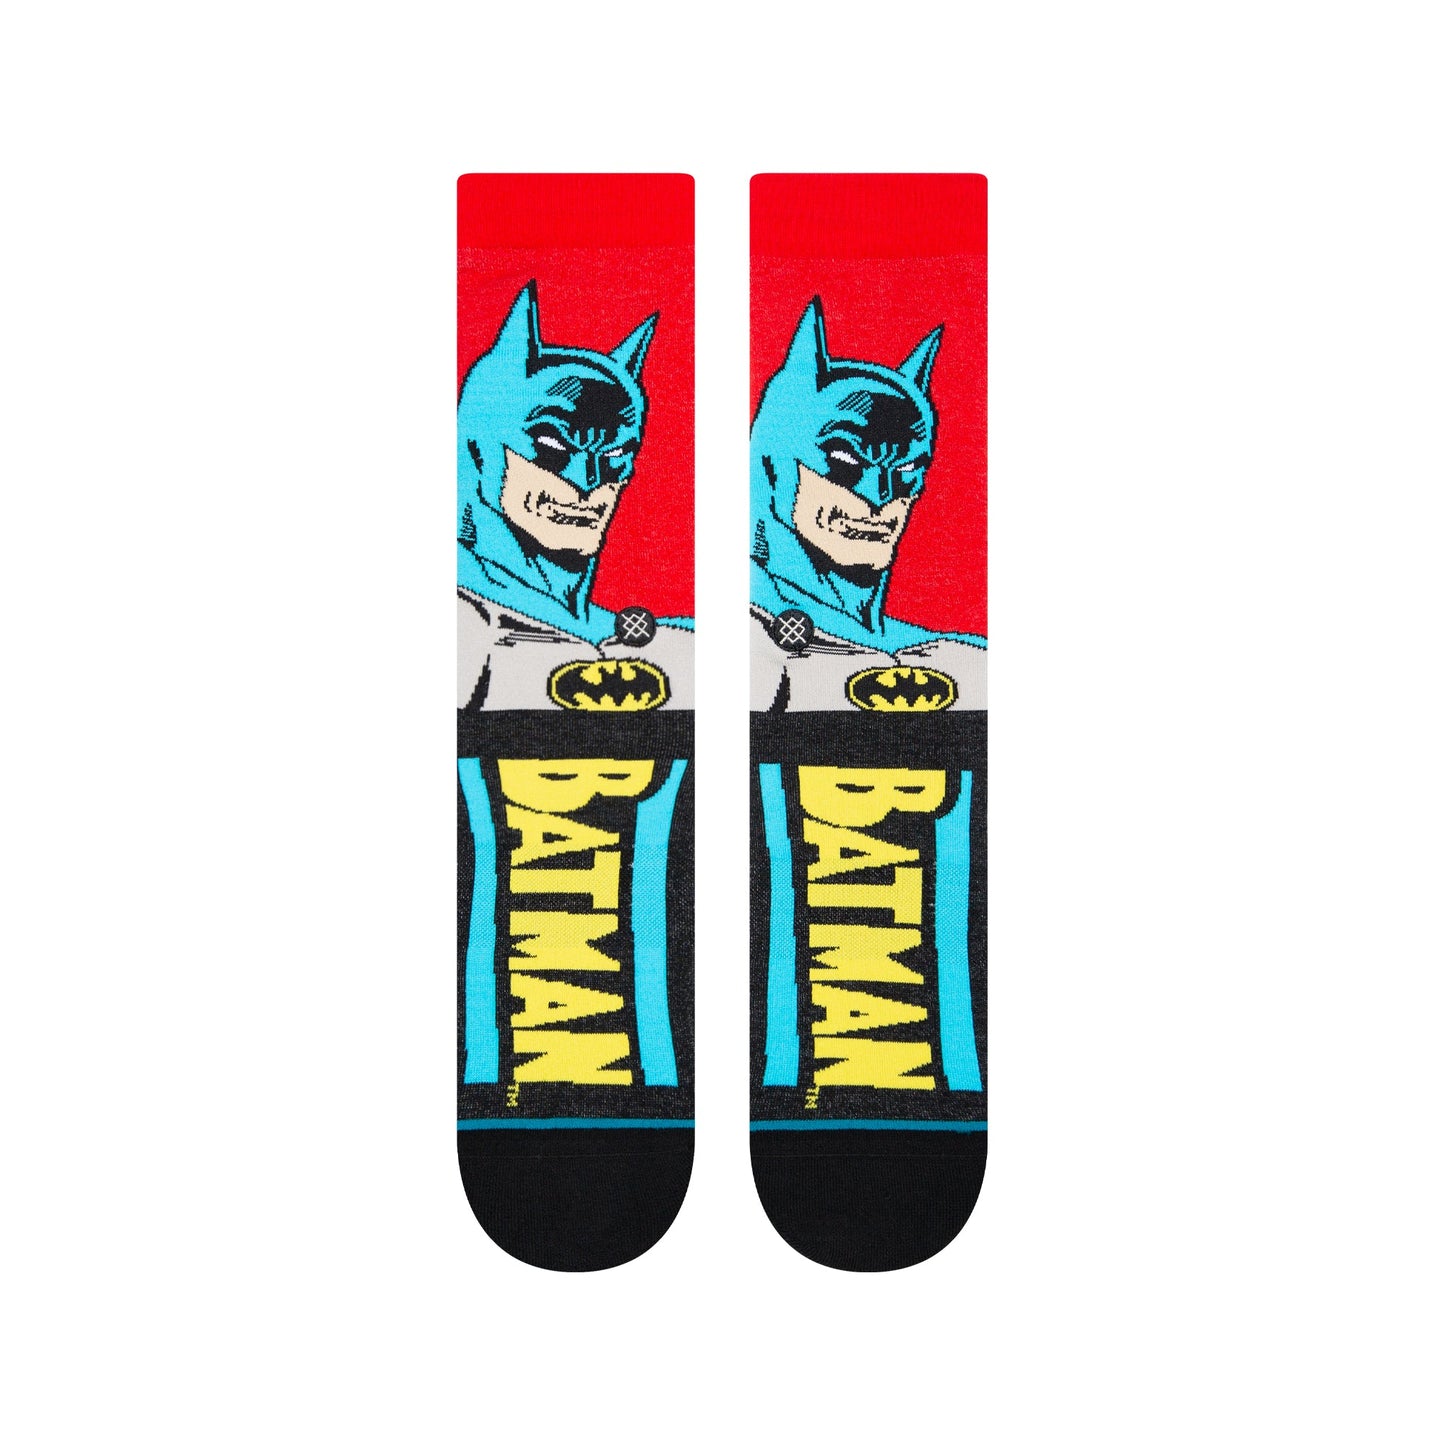 Chaussettes mi-mollet noires Batman Comic de Stance